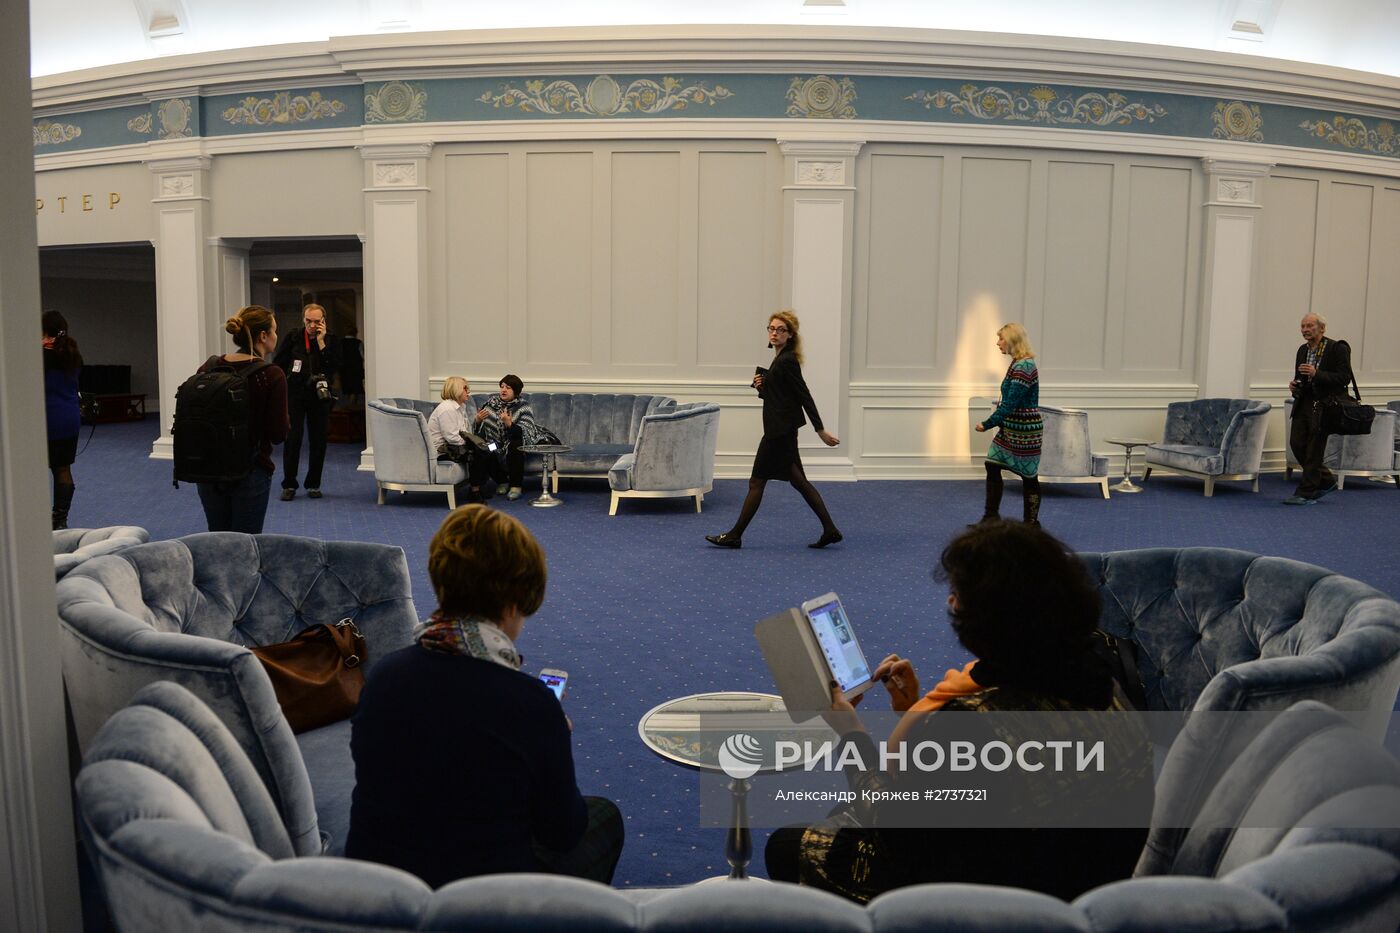 Открытие Новосибирского театра оперы и балета после реконструкции